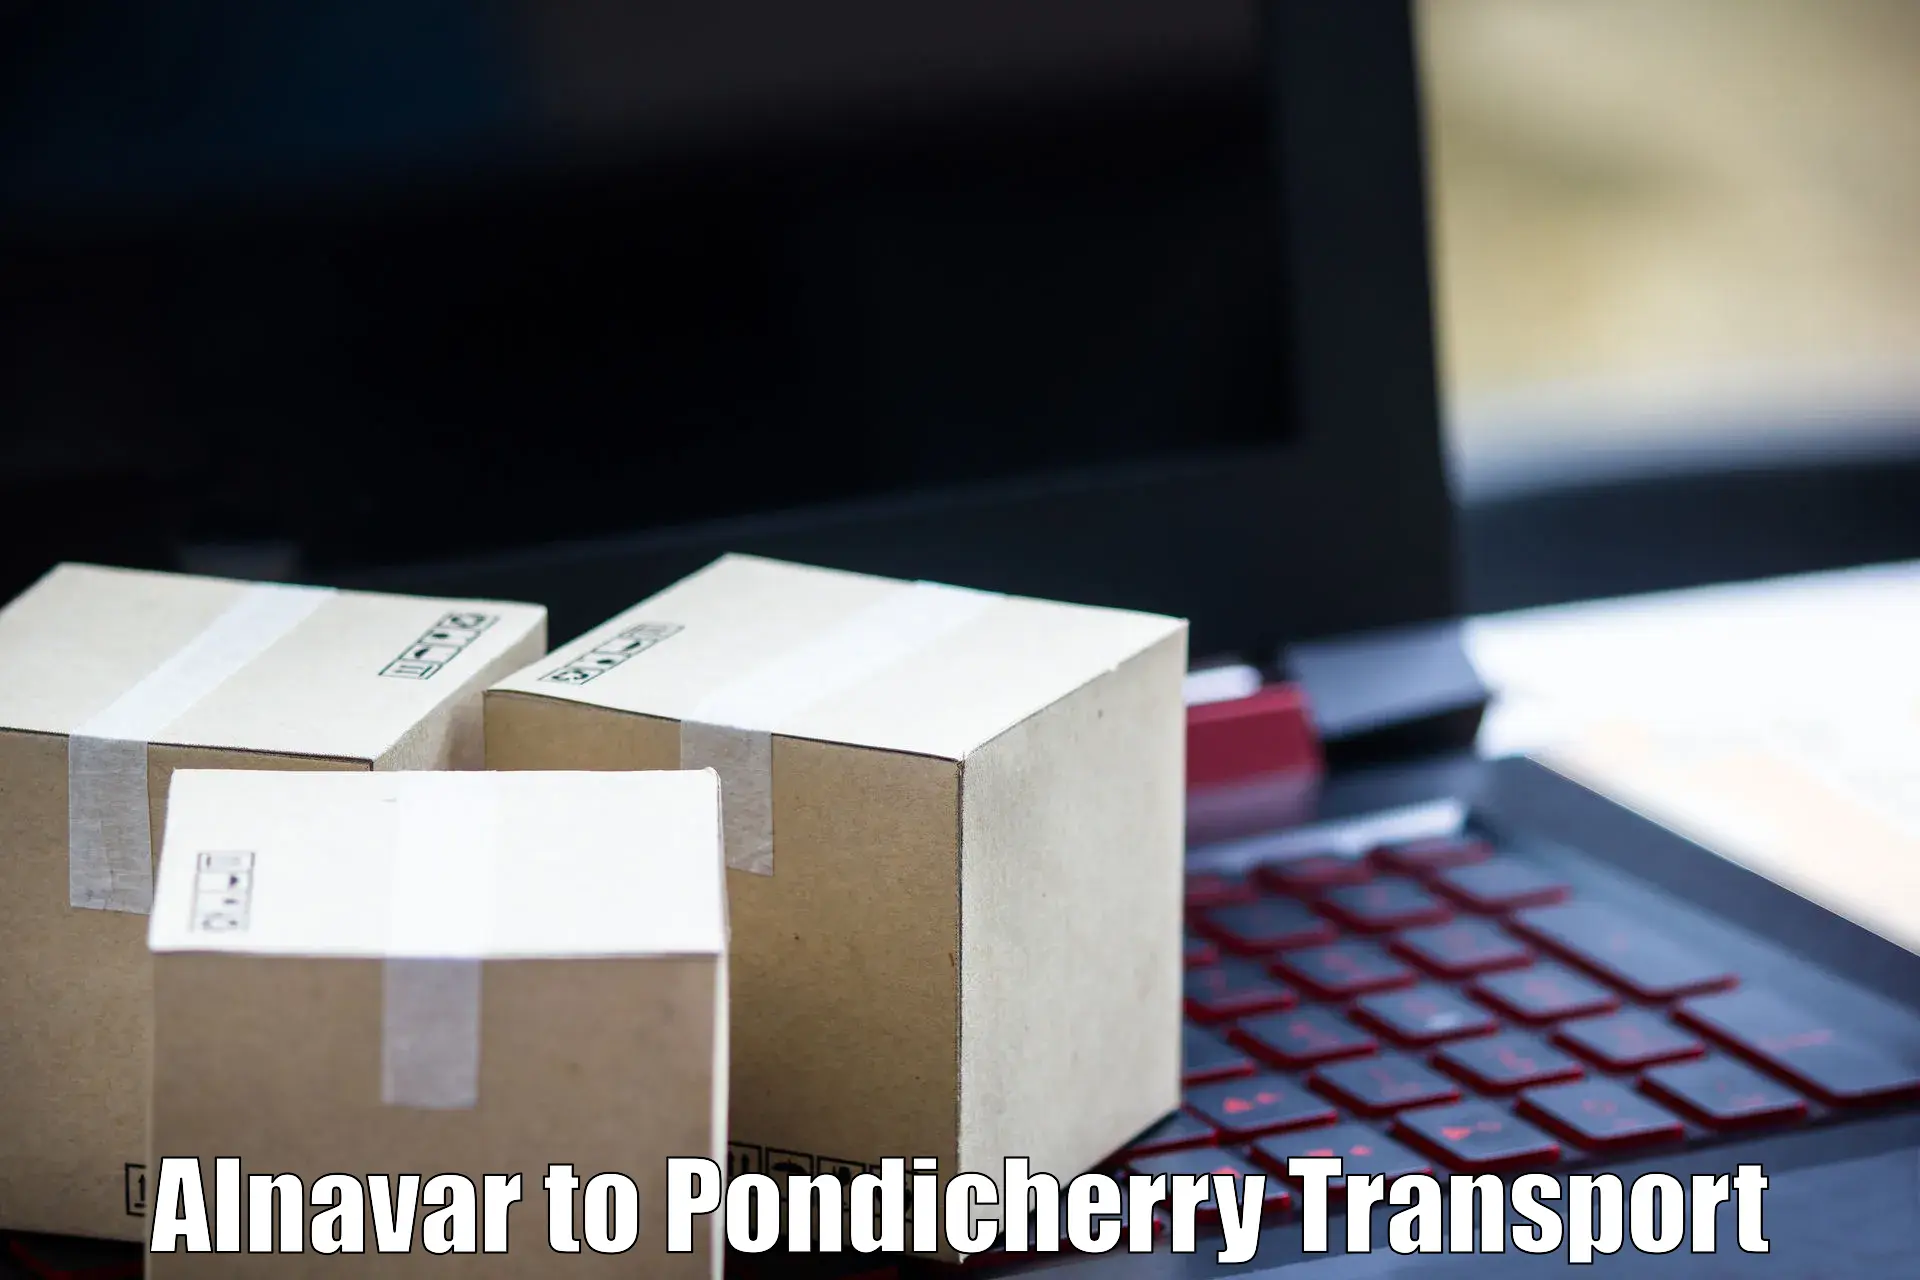 Intercity goods transport Alnavar to Pondicherry